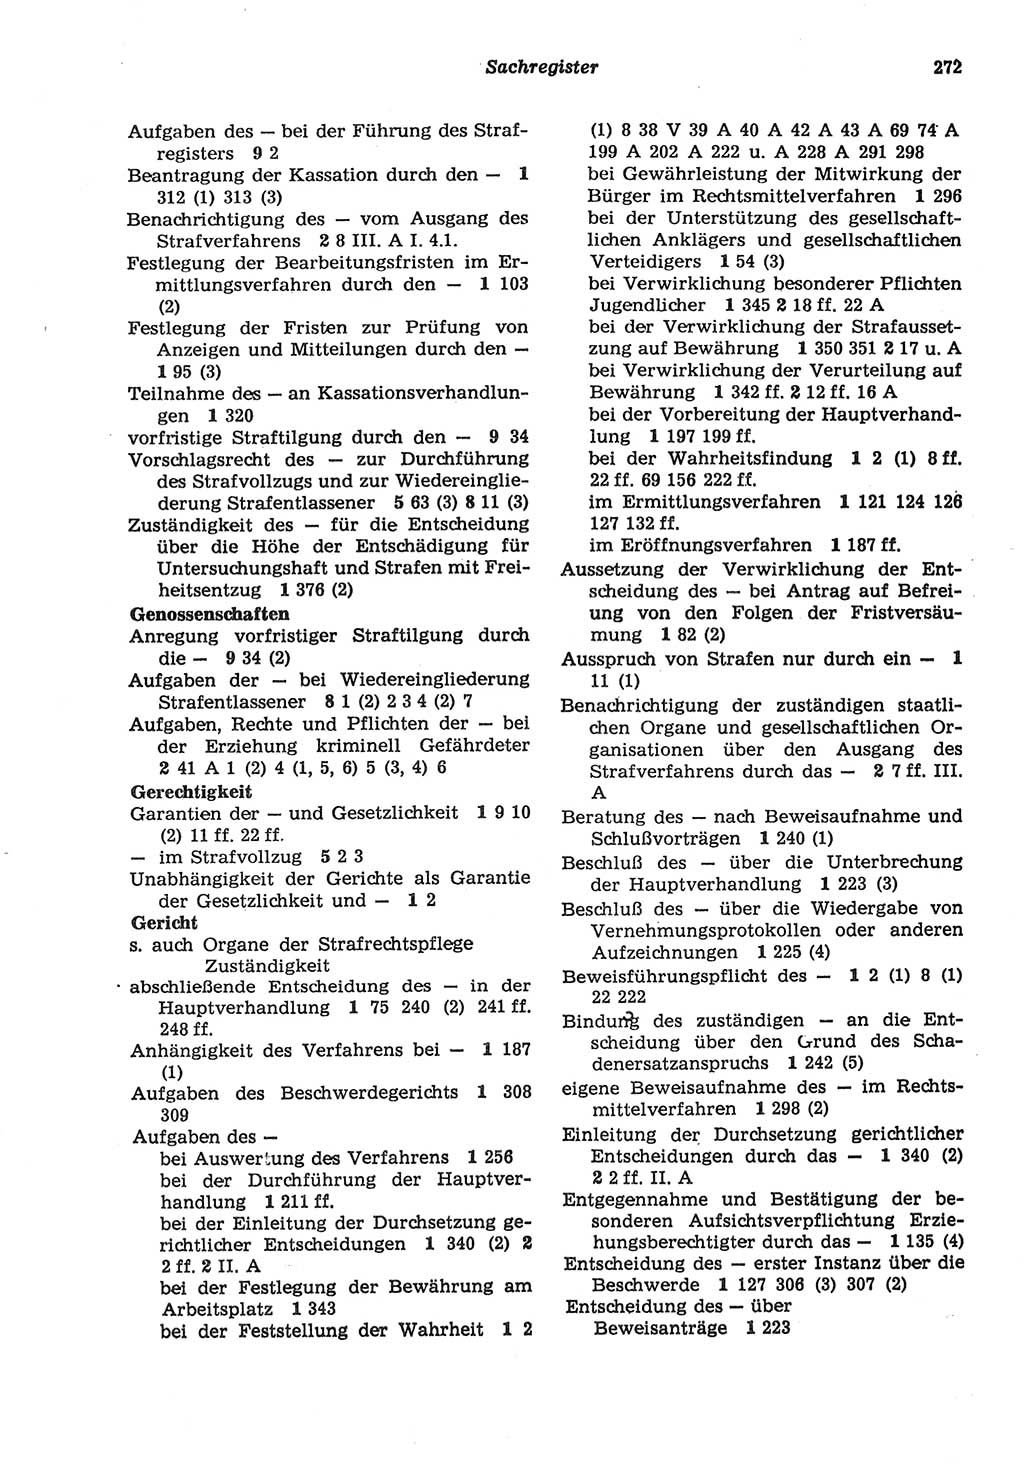 Strafprozeßordnung (StPO) der Deutschen Demokratischen Republik (DDR) sowie angrenzende Gesetze und Bestimmungen 1977, Seite 272 (StPO DDR Ges. Best. 1977, S. 272)